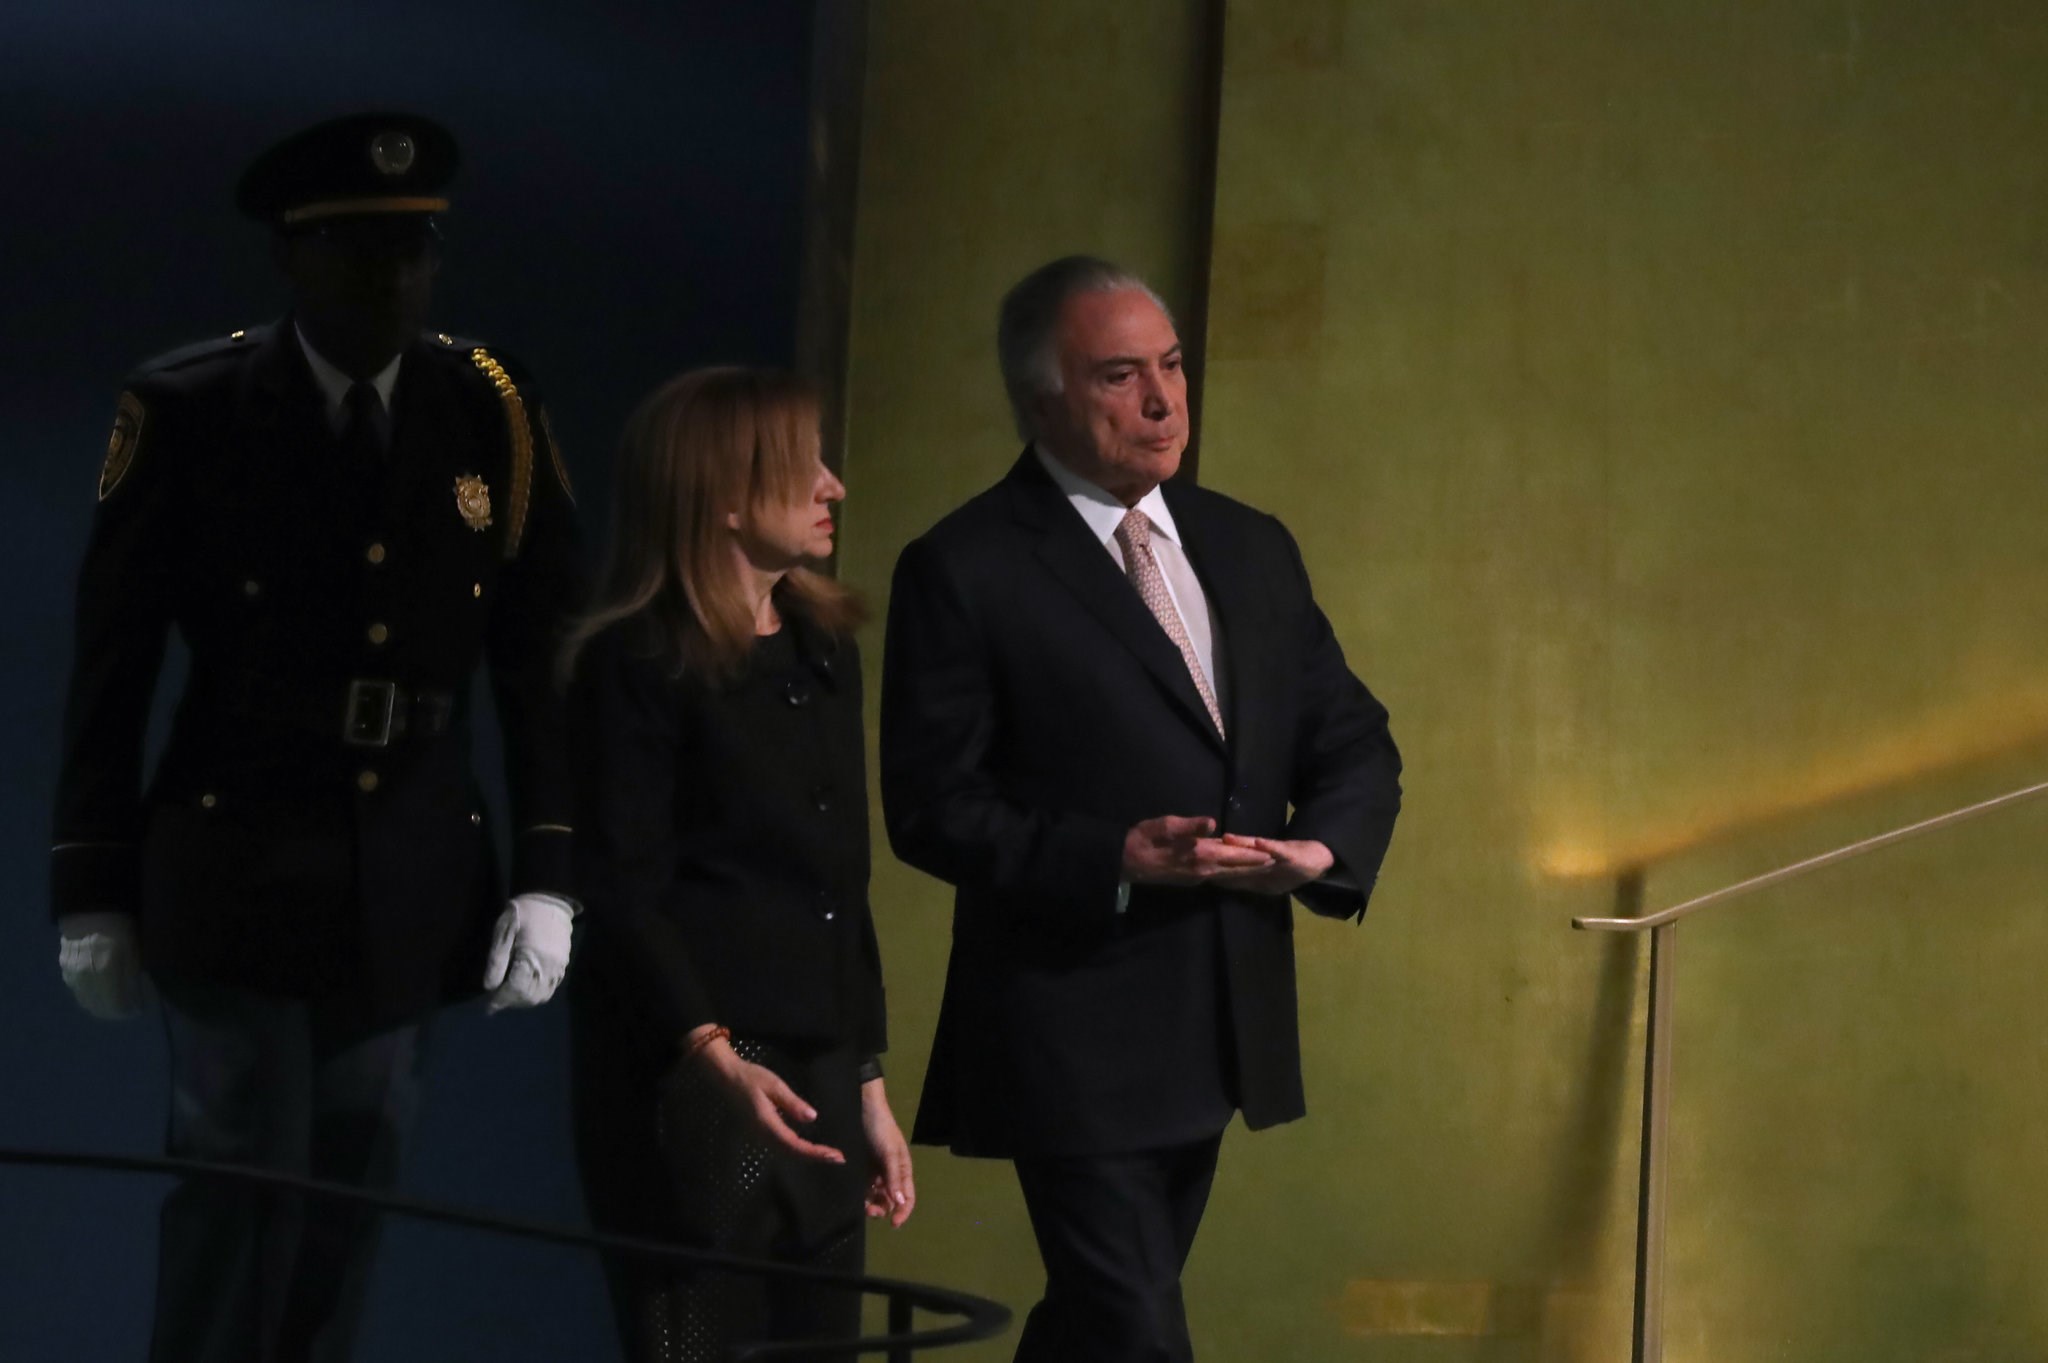 Huawei yolsuzluk ve kara para aklamakla suçlanan eski Brezilya devlet başkanını işe aldı